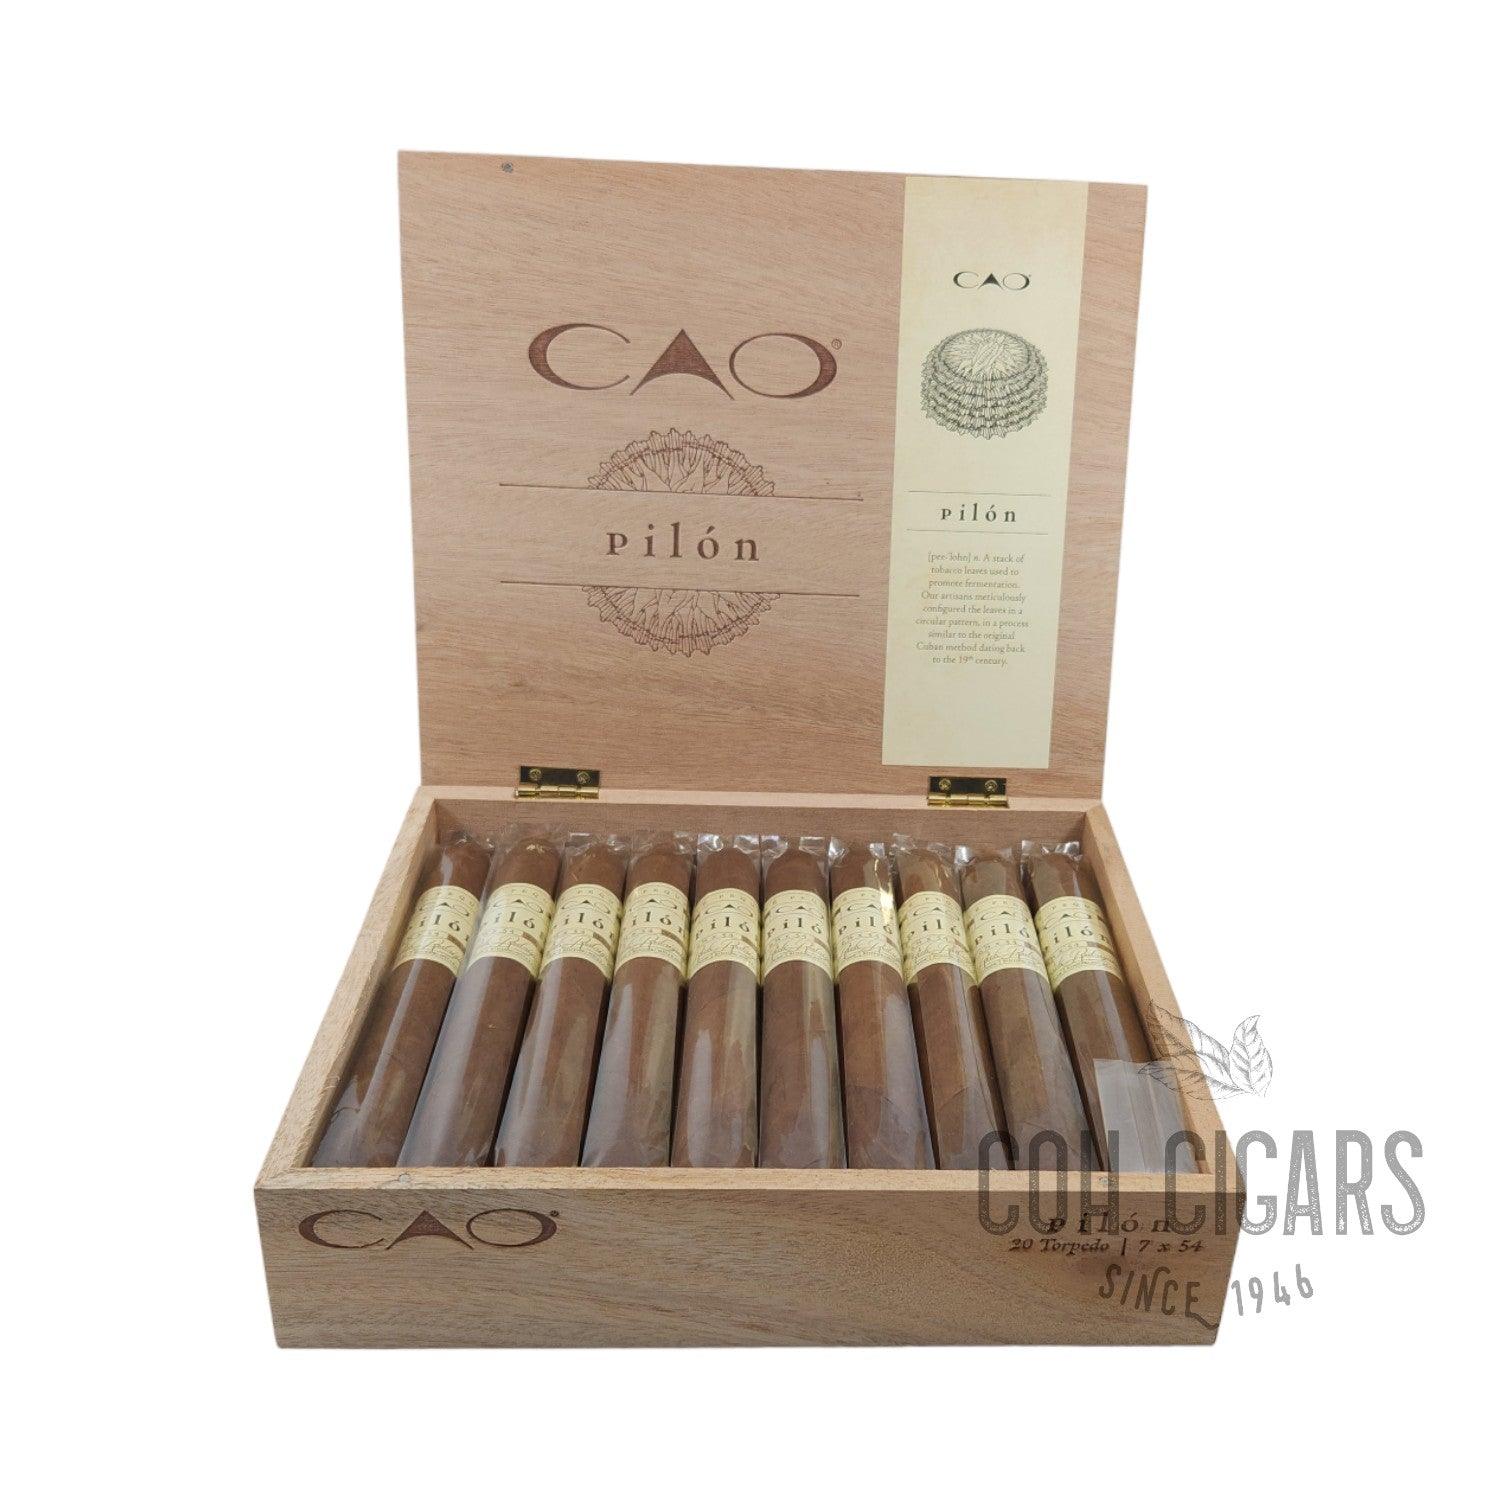 CAO Cigar | Pilon 20 Torpedo | Box 20 - HK CohCigars